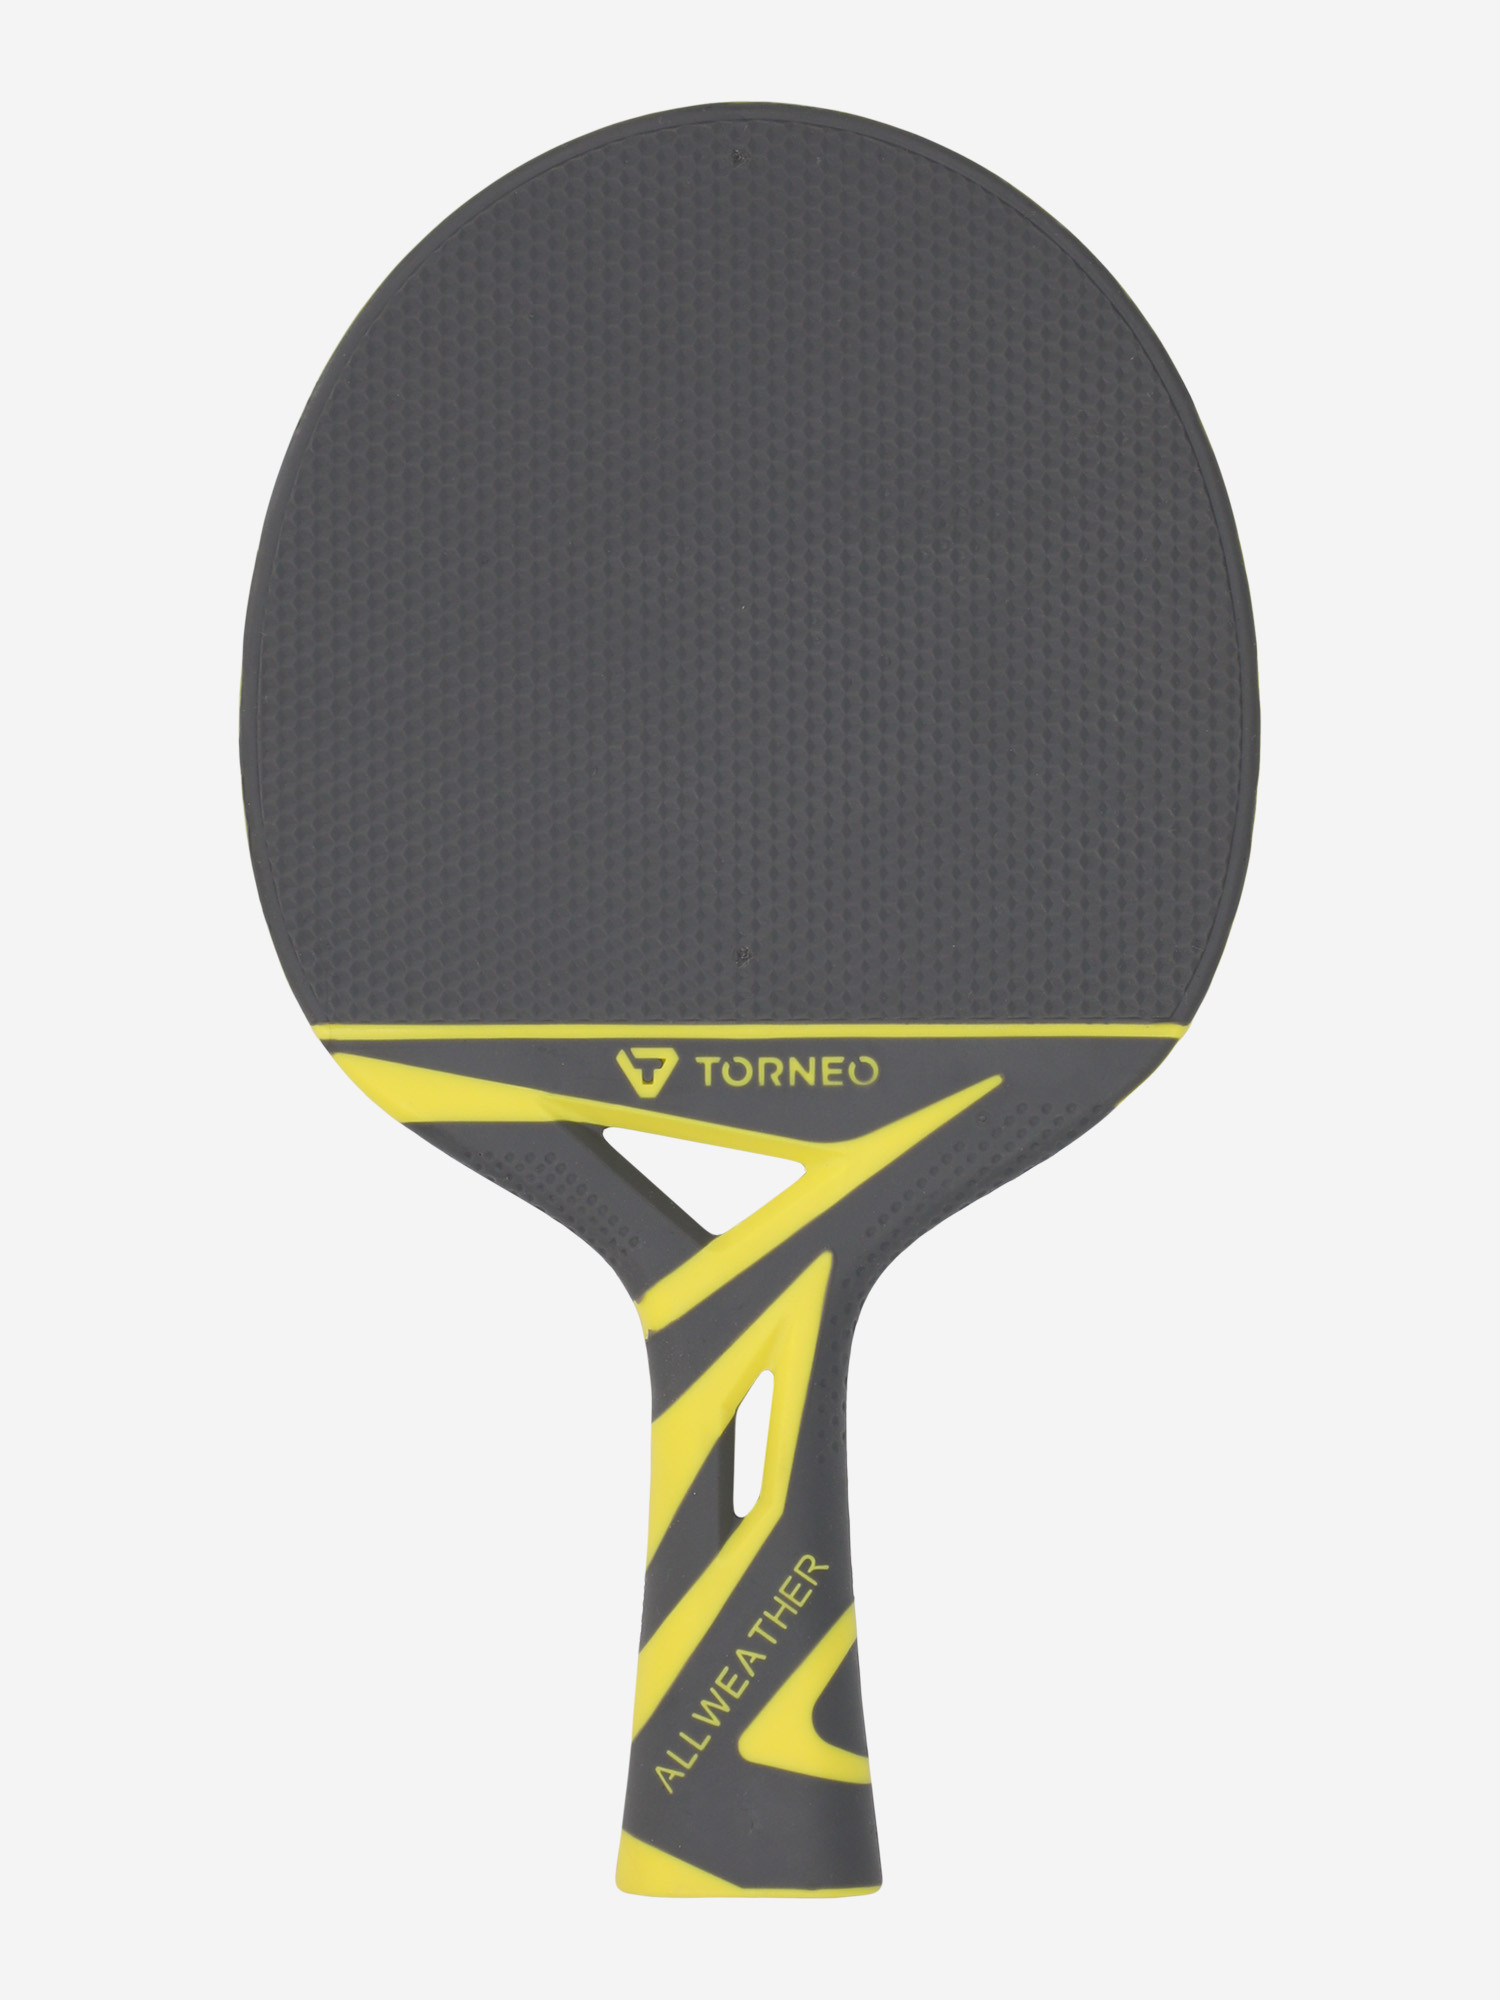 Ракетка для настільного тенісу Torneo Stormx